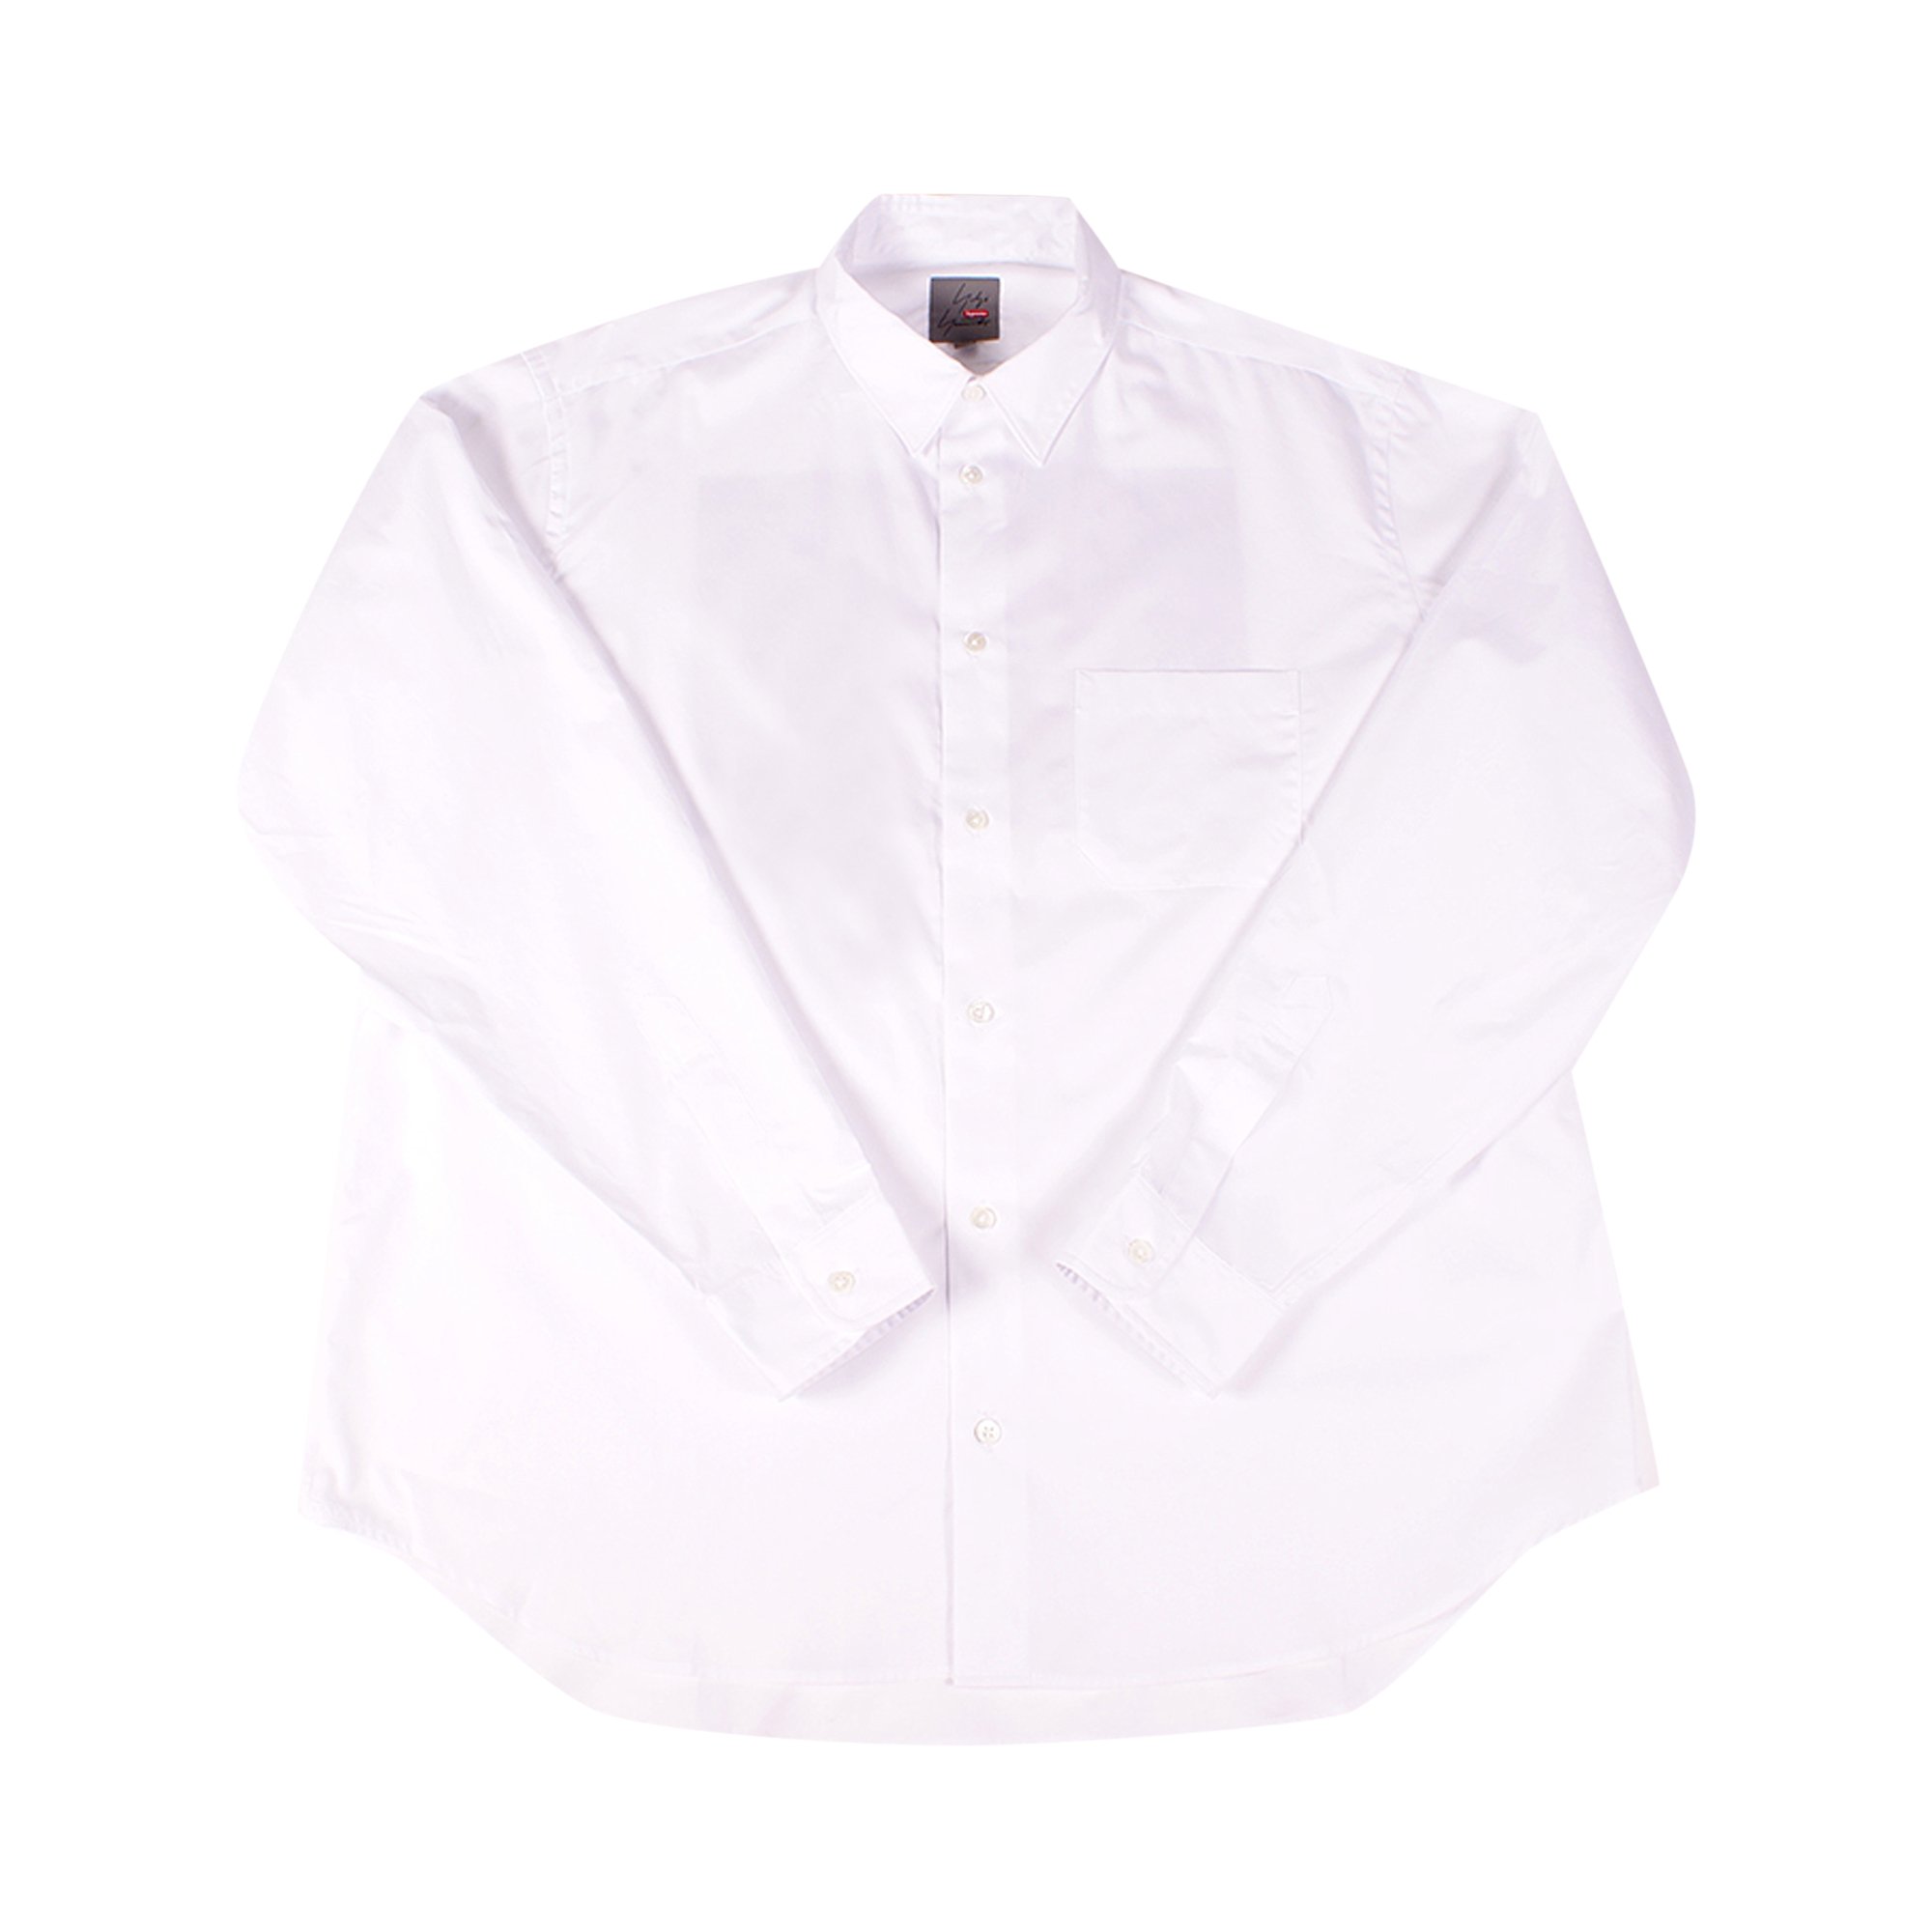 Supreme x Yohji Yamamoto Shirt 'White'